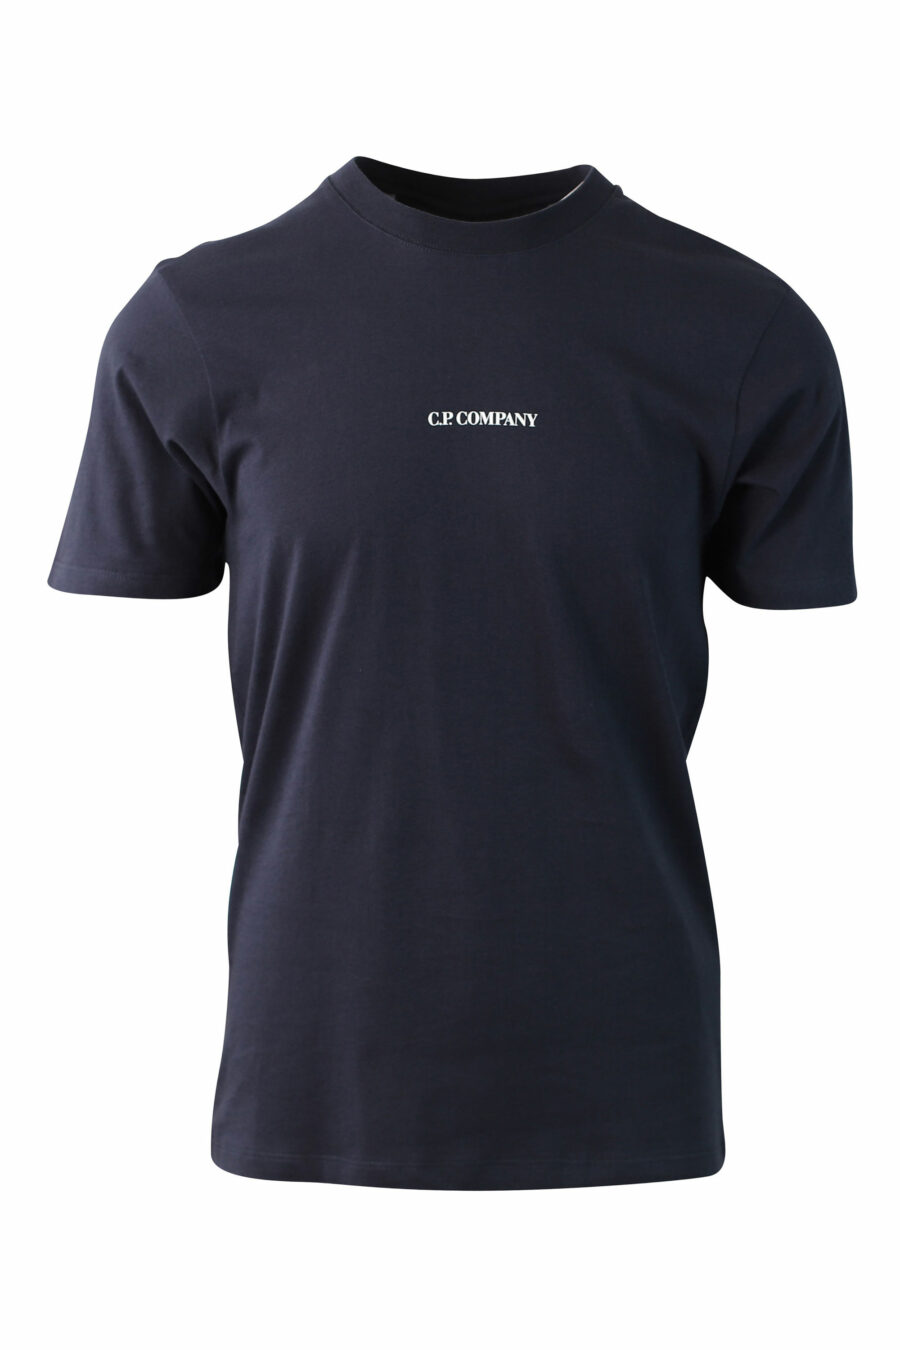 Camiseta azul oscuro con minilogo central - IMG 0018 1